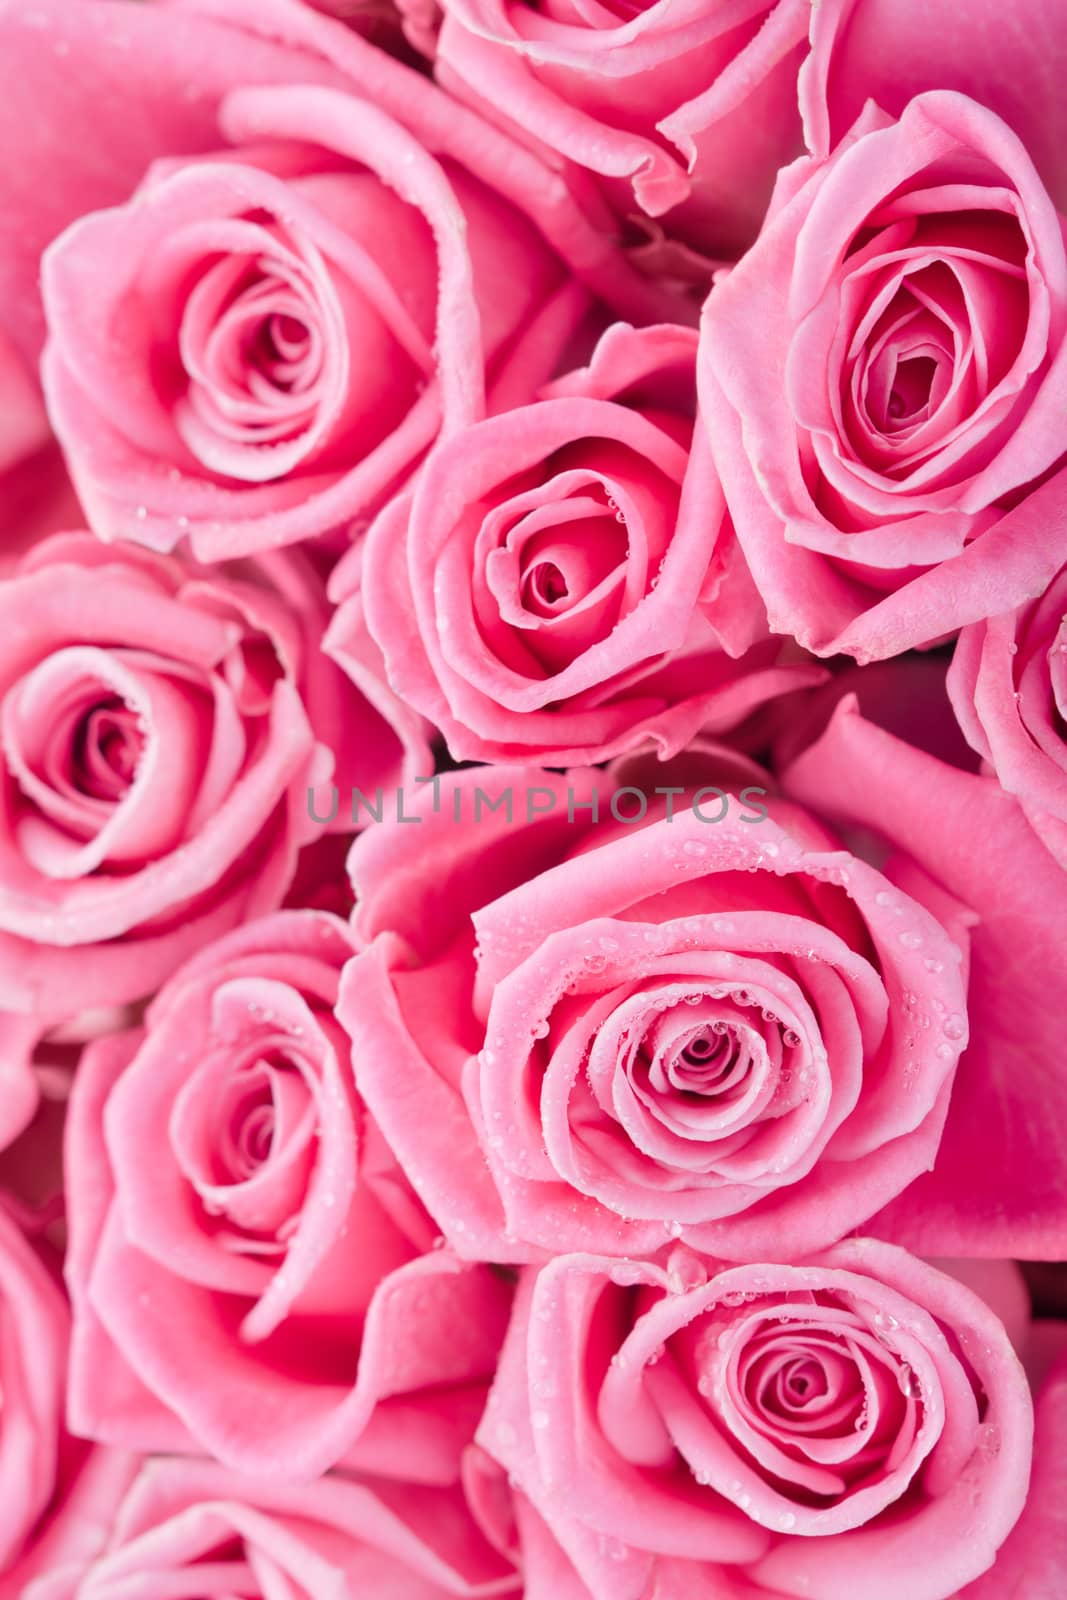 Pink roses by mariakomar